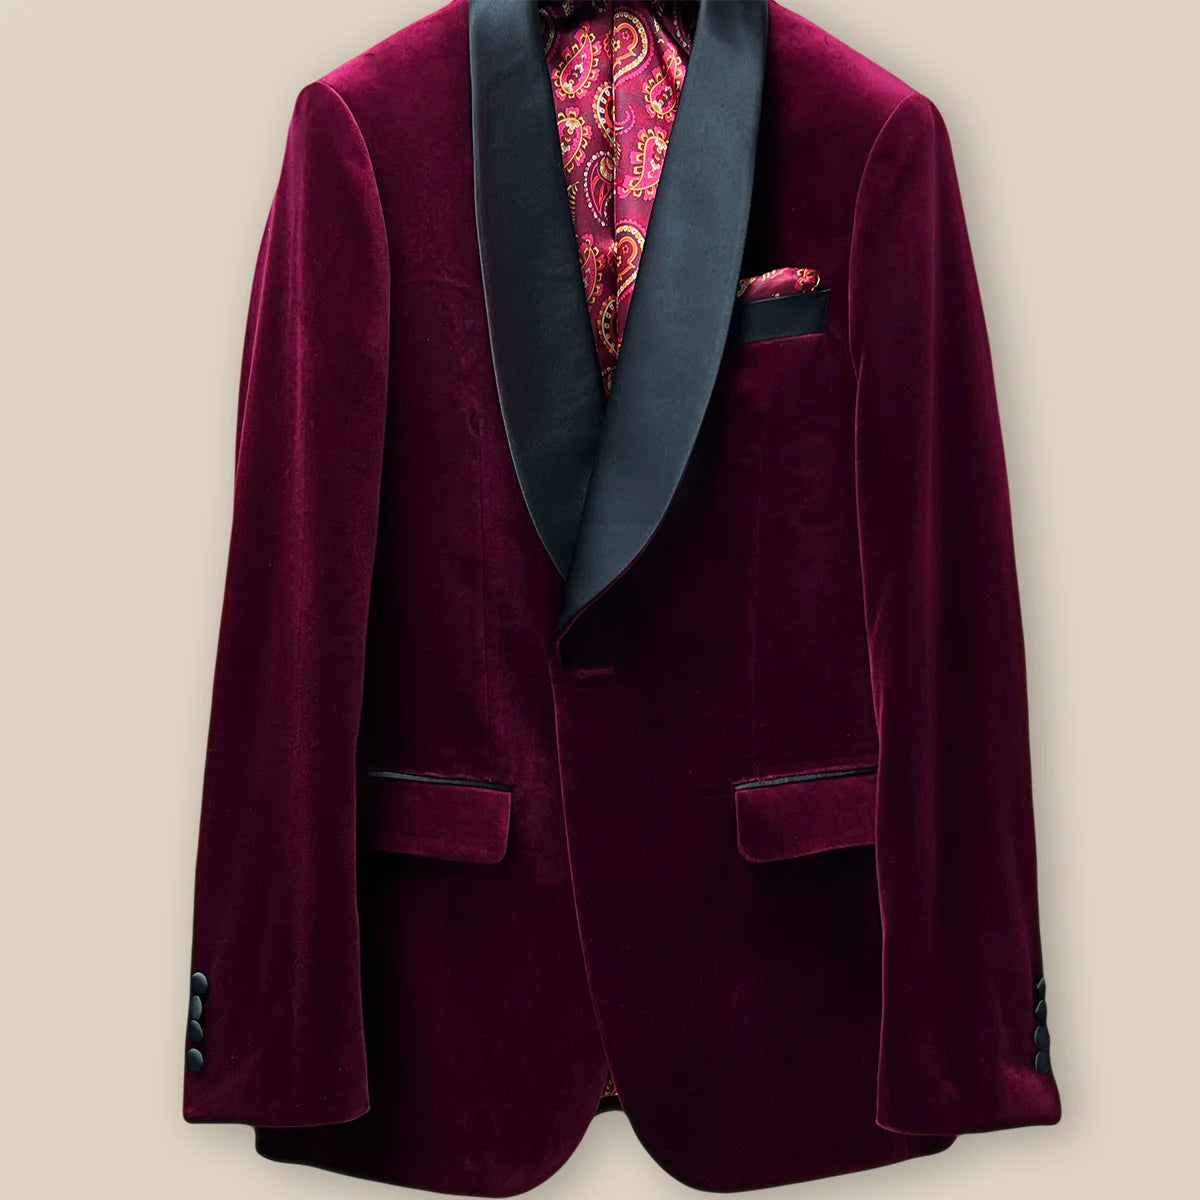 Buttonhole panel of a burgundy velvet tuxedo dinner jacket.